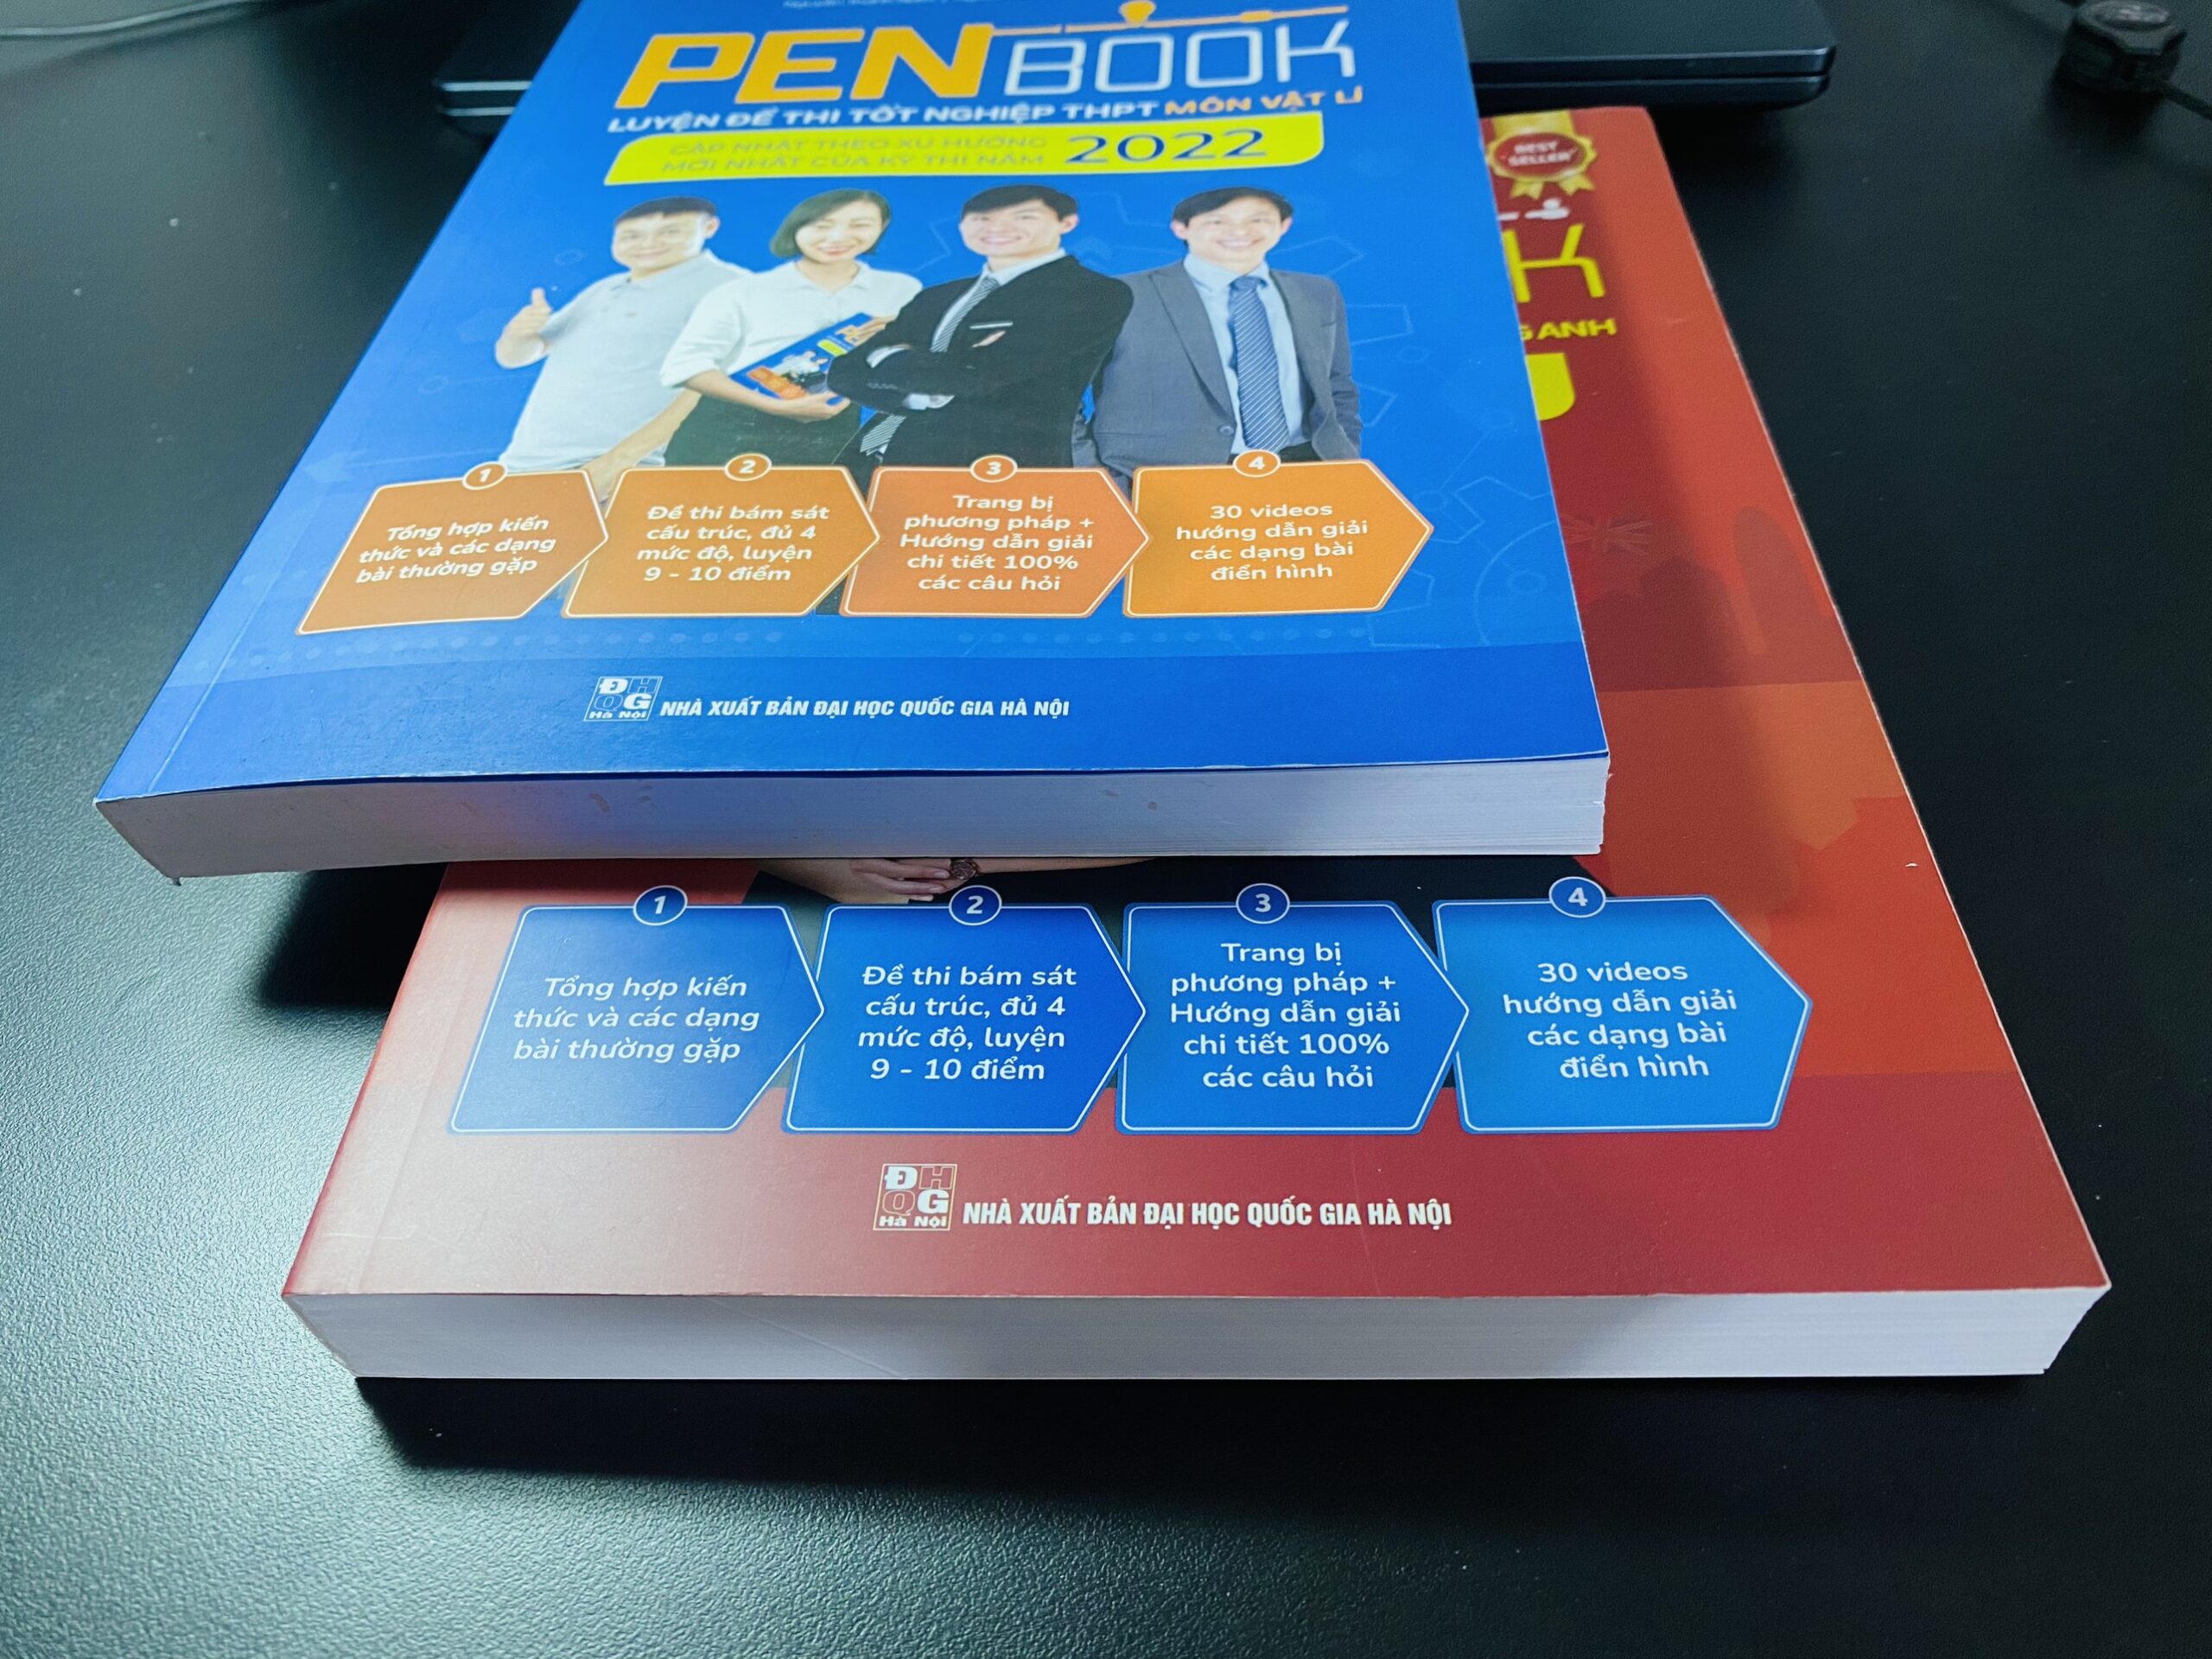 Top sách ôn thi THPT Quốc gia Penbook rất chất lượng